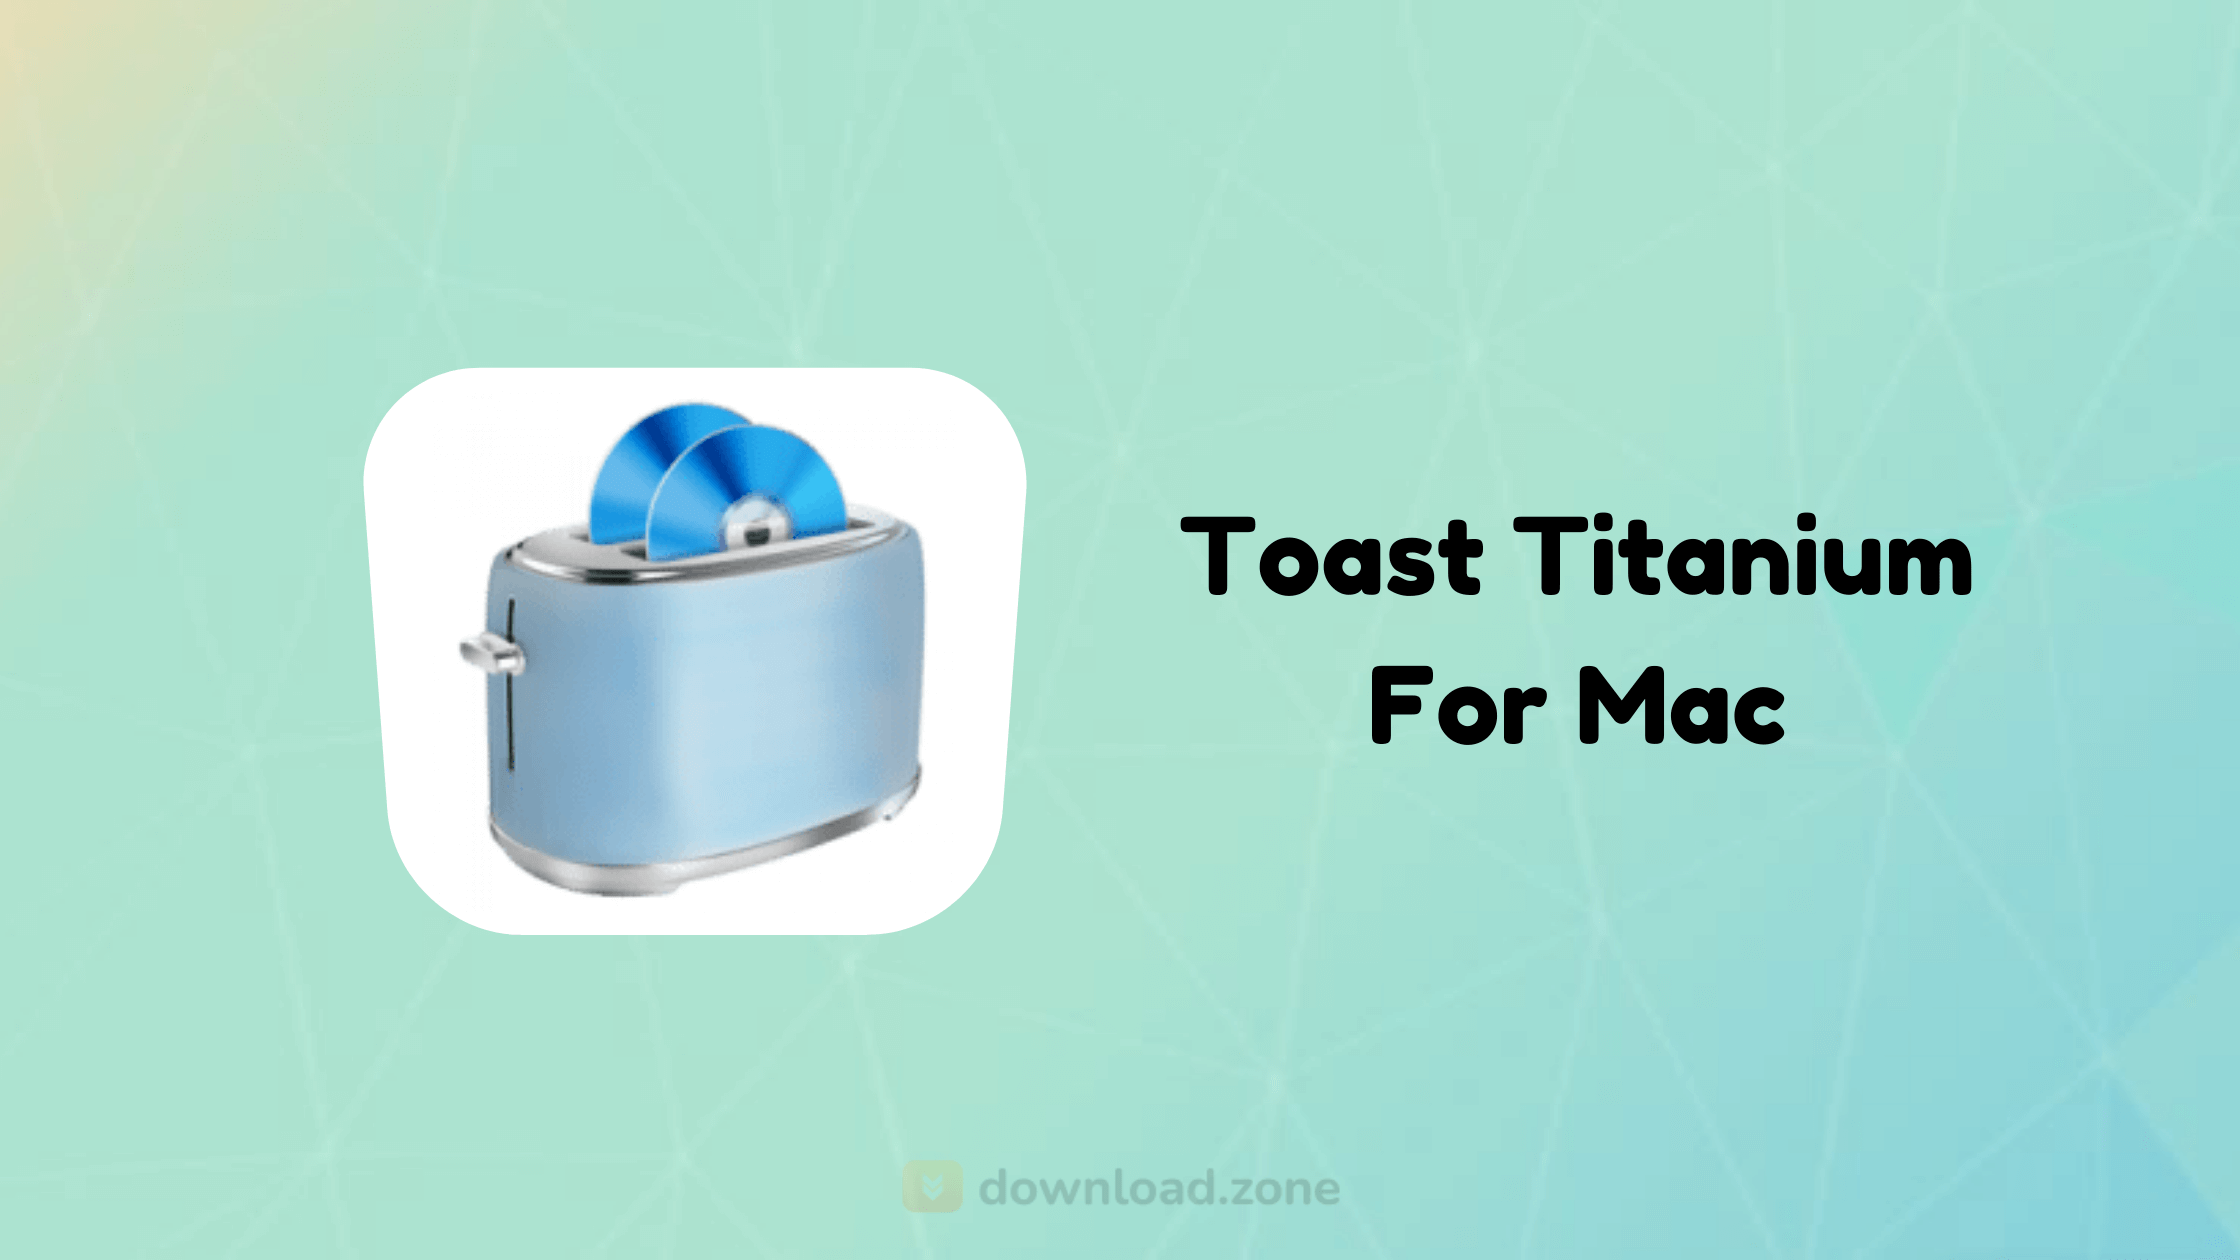 toast titanium 16 dolby atmos